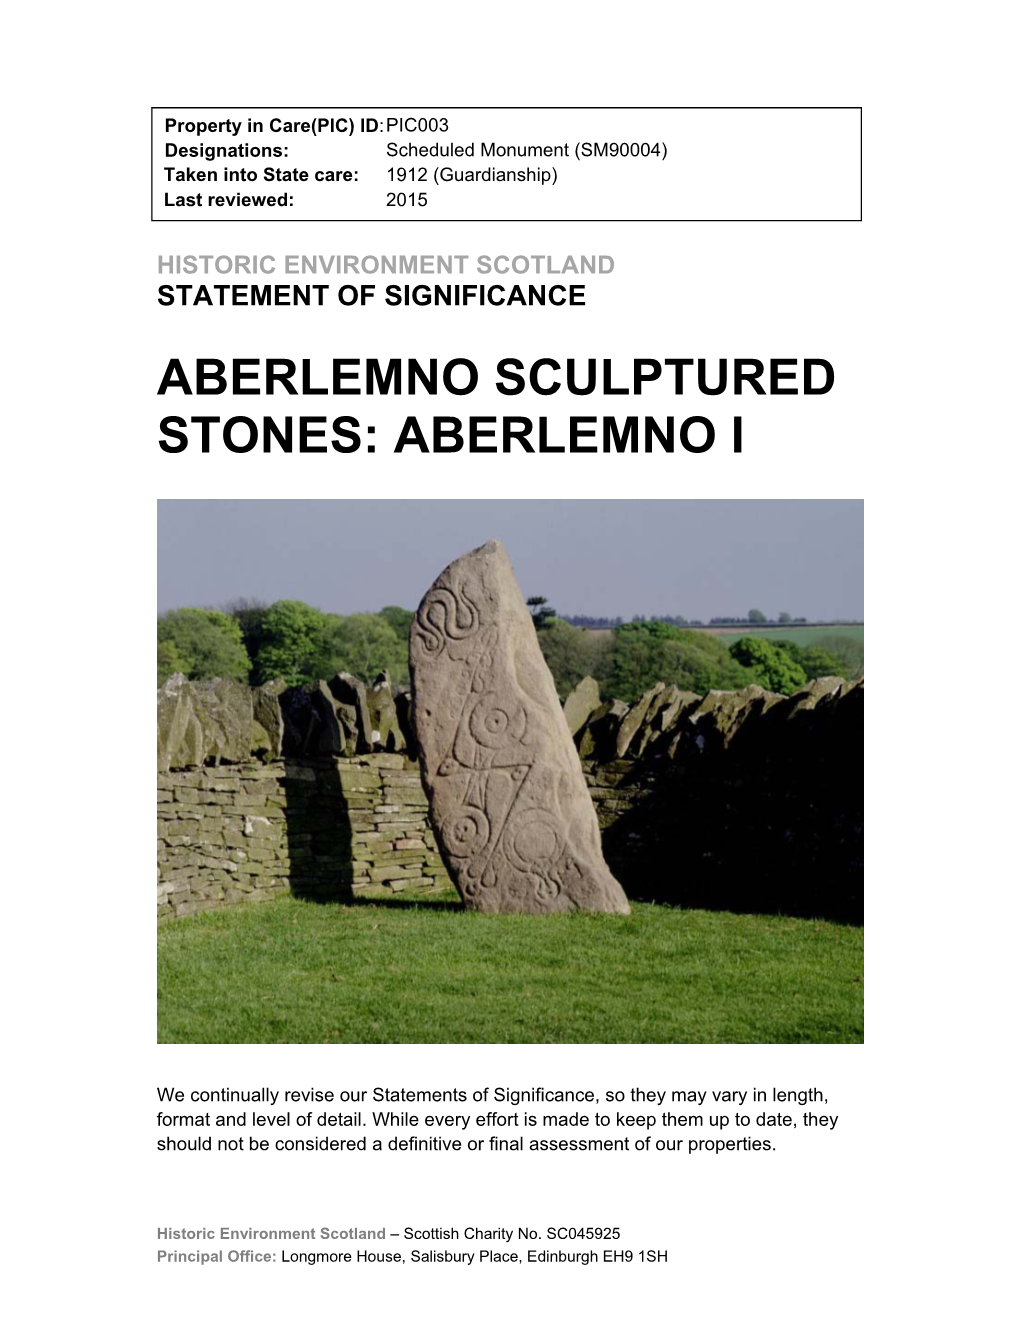 Aberlemno Sculptured Stones: Aberlemno I